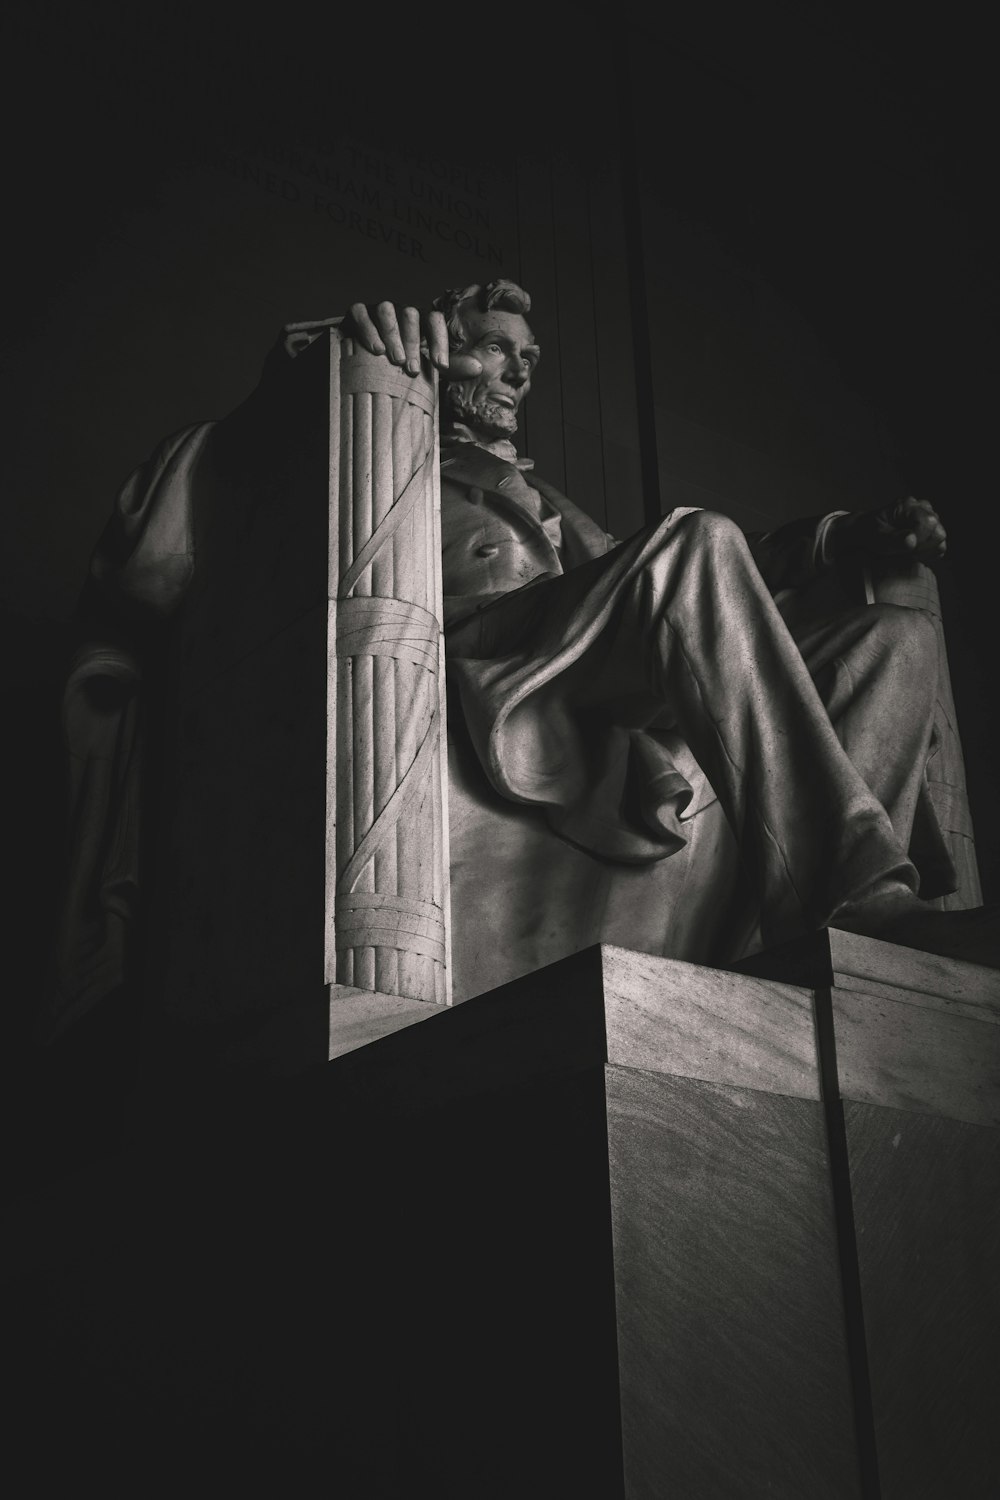 Uomo in abito statua in scala di grigi fotografia